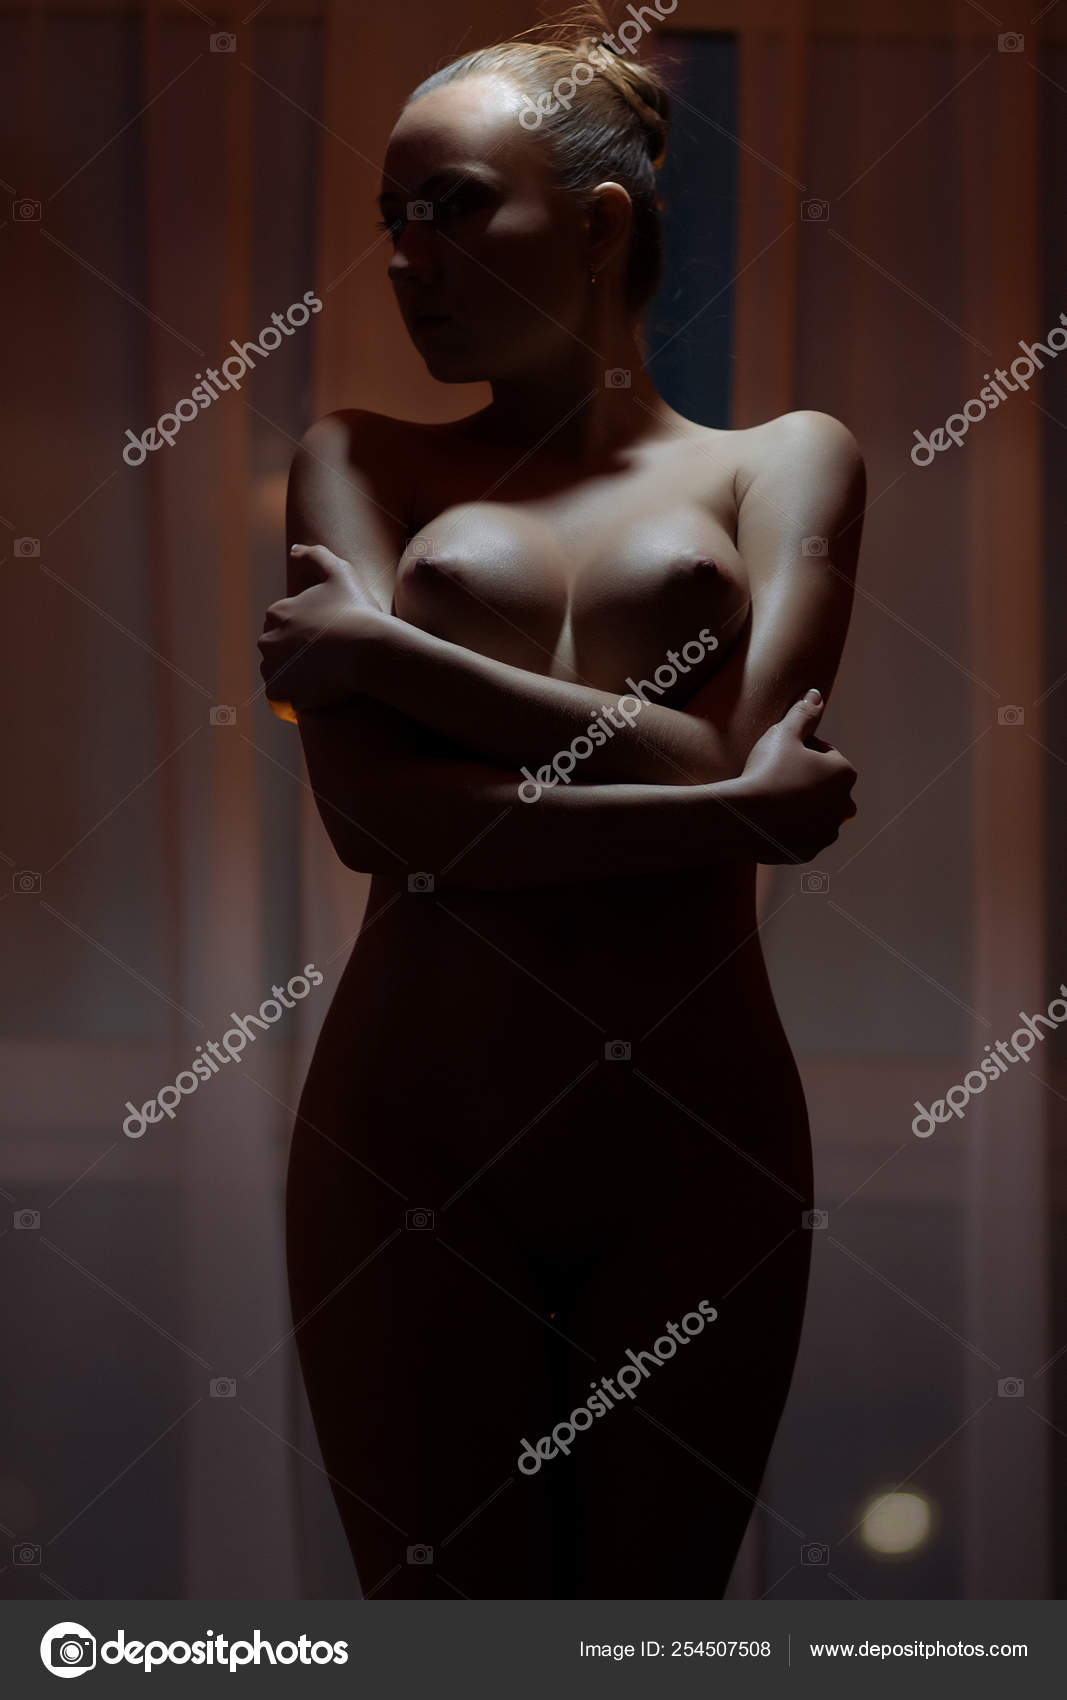 https://st4n.depositphotos.com/5034975/25450/i/1600/depositphotos_254507508-stock-photo-young-sensual-naked-woman-posing.jpg